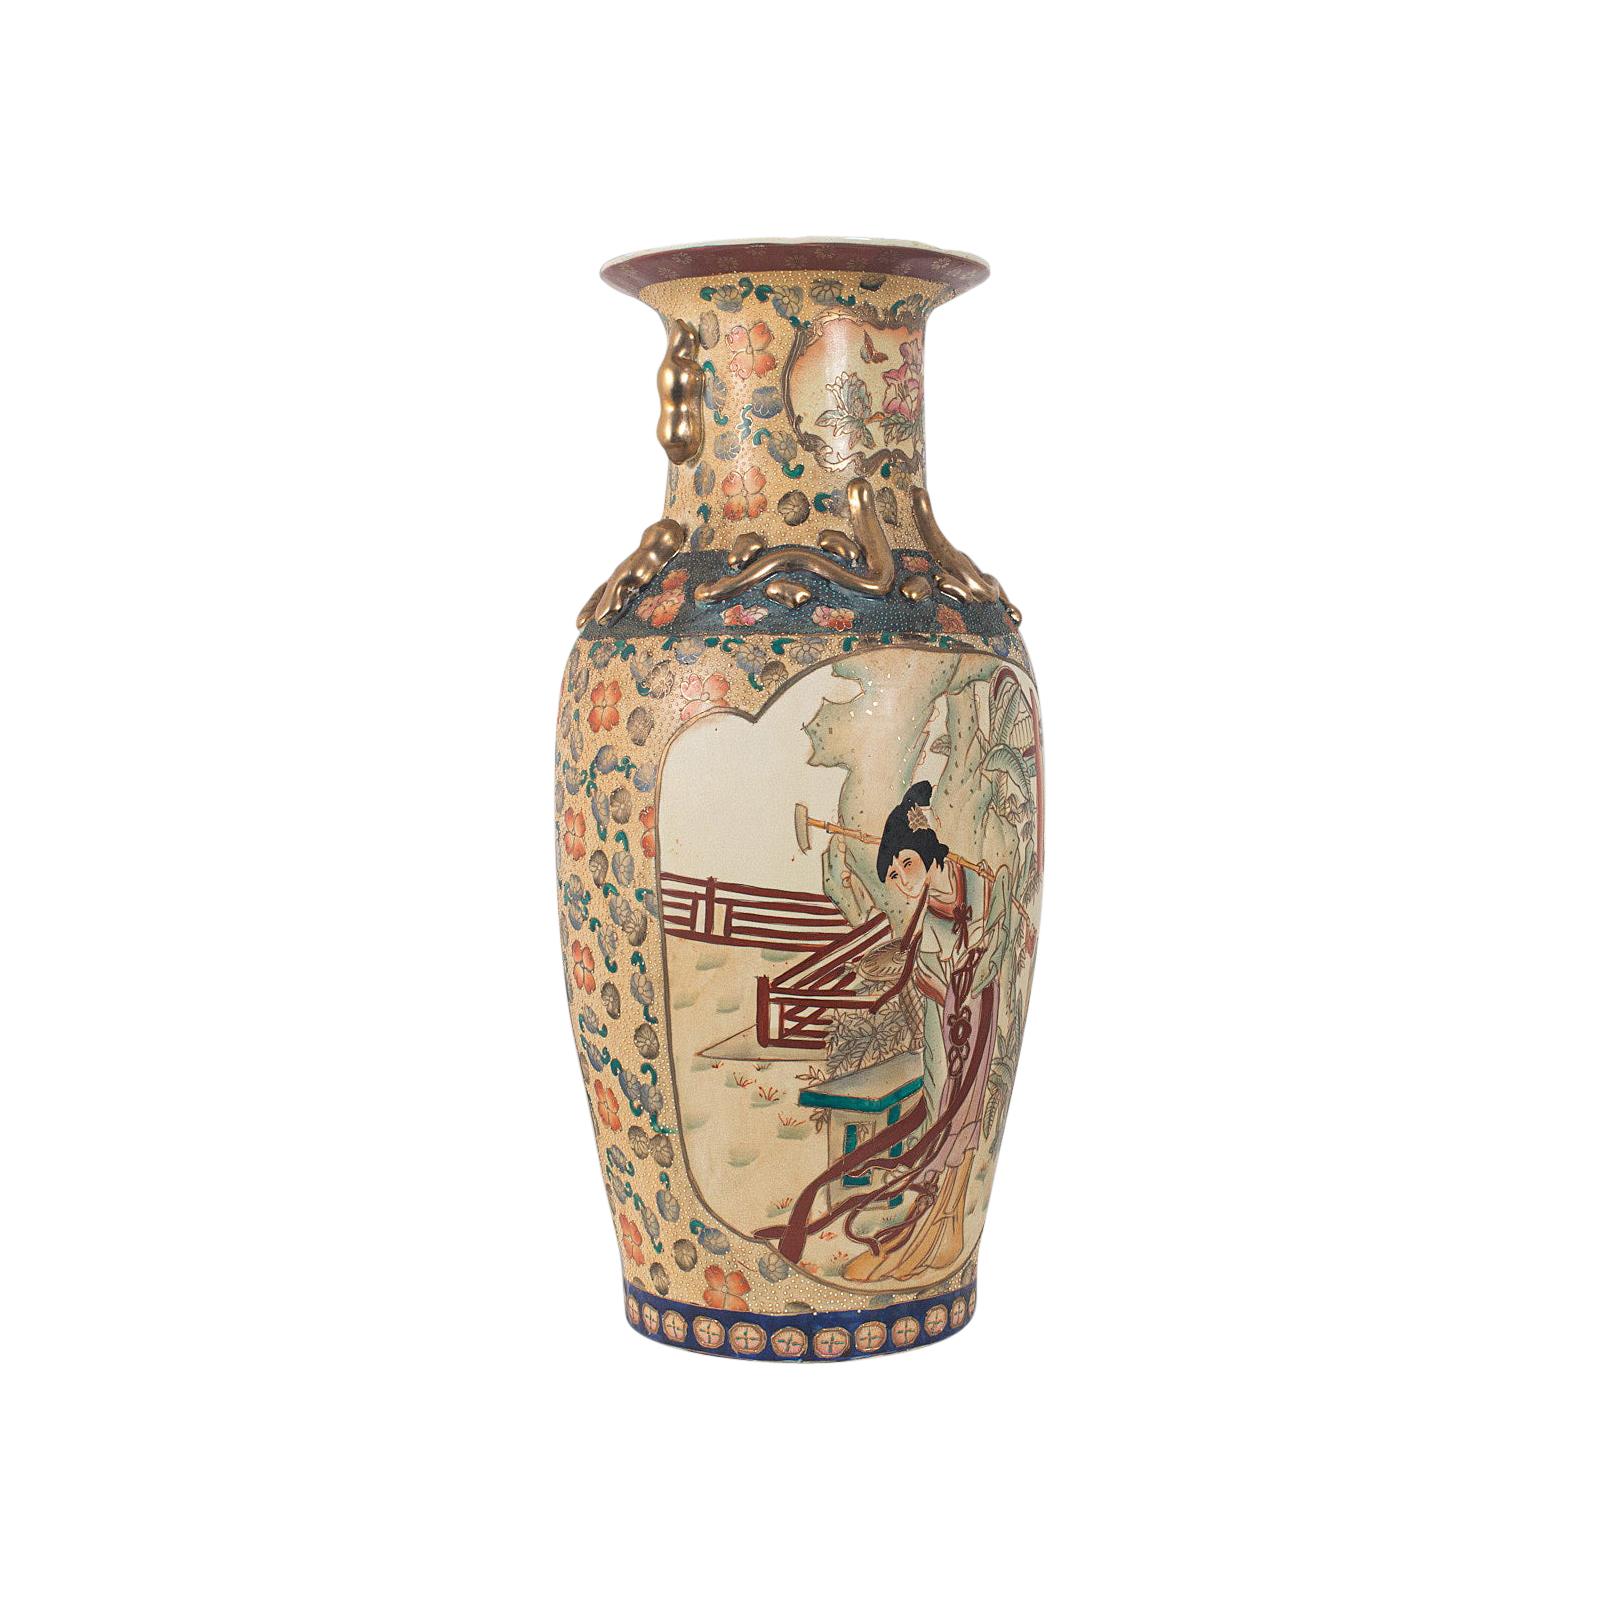 Grand vase décoratif oriental, céramique, urne, feuillage, Art Déco, vers 1940